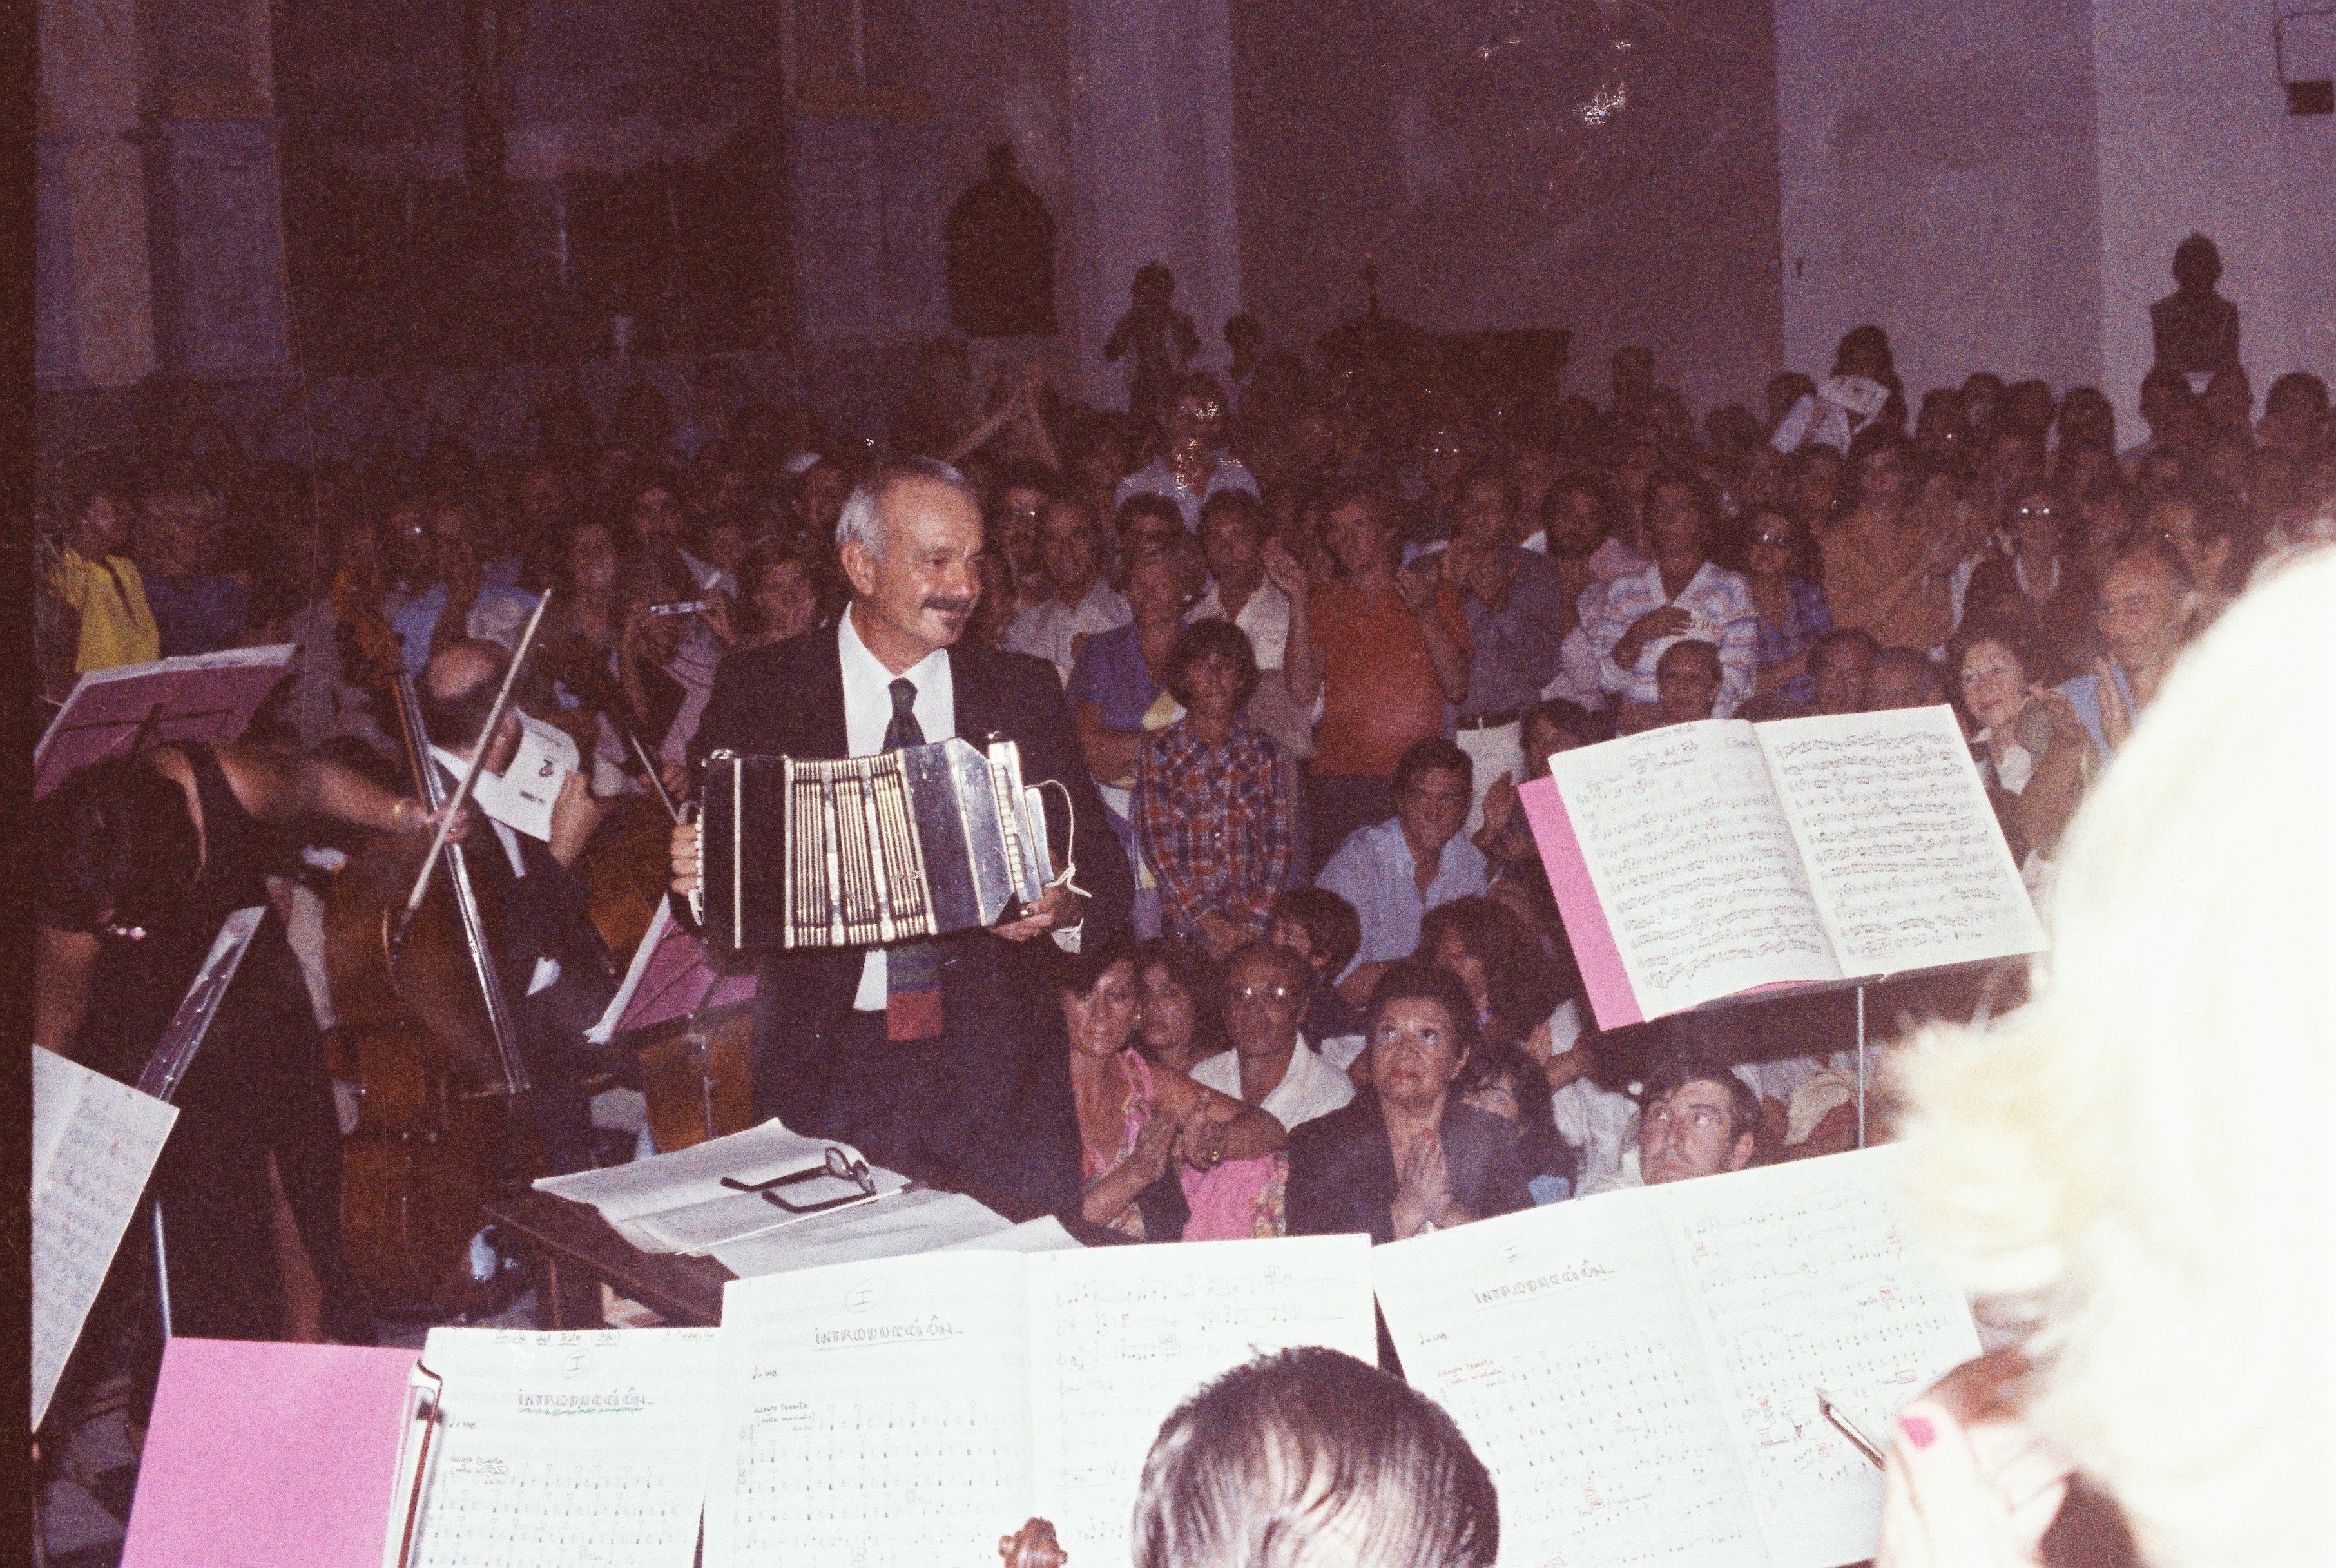 Fotografía cedida por la familia del músico uruguayo Dante Magnone que muestra a Astor Piazzolla en el estreno de su obra "Suite de Punta del Este" en la catedral de Maldonado en marzo de 1980. EFE/Familia Magnone
